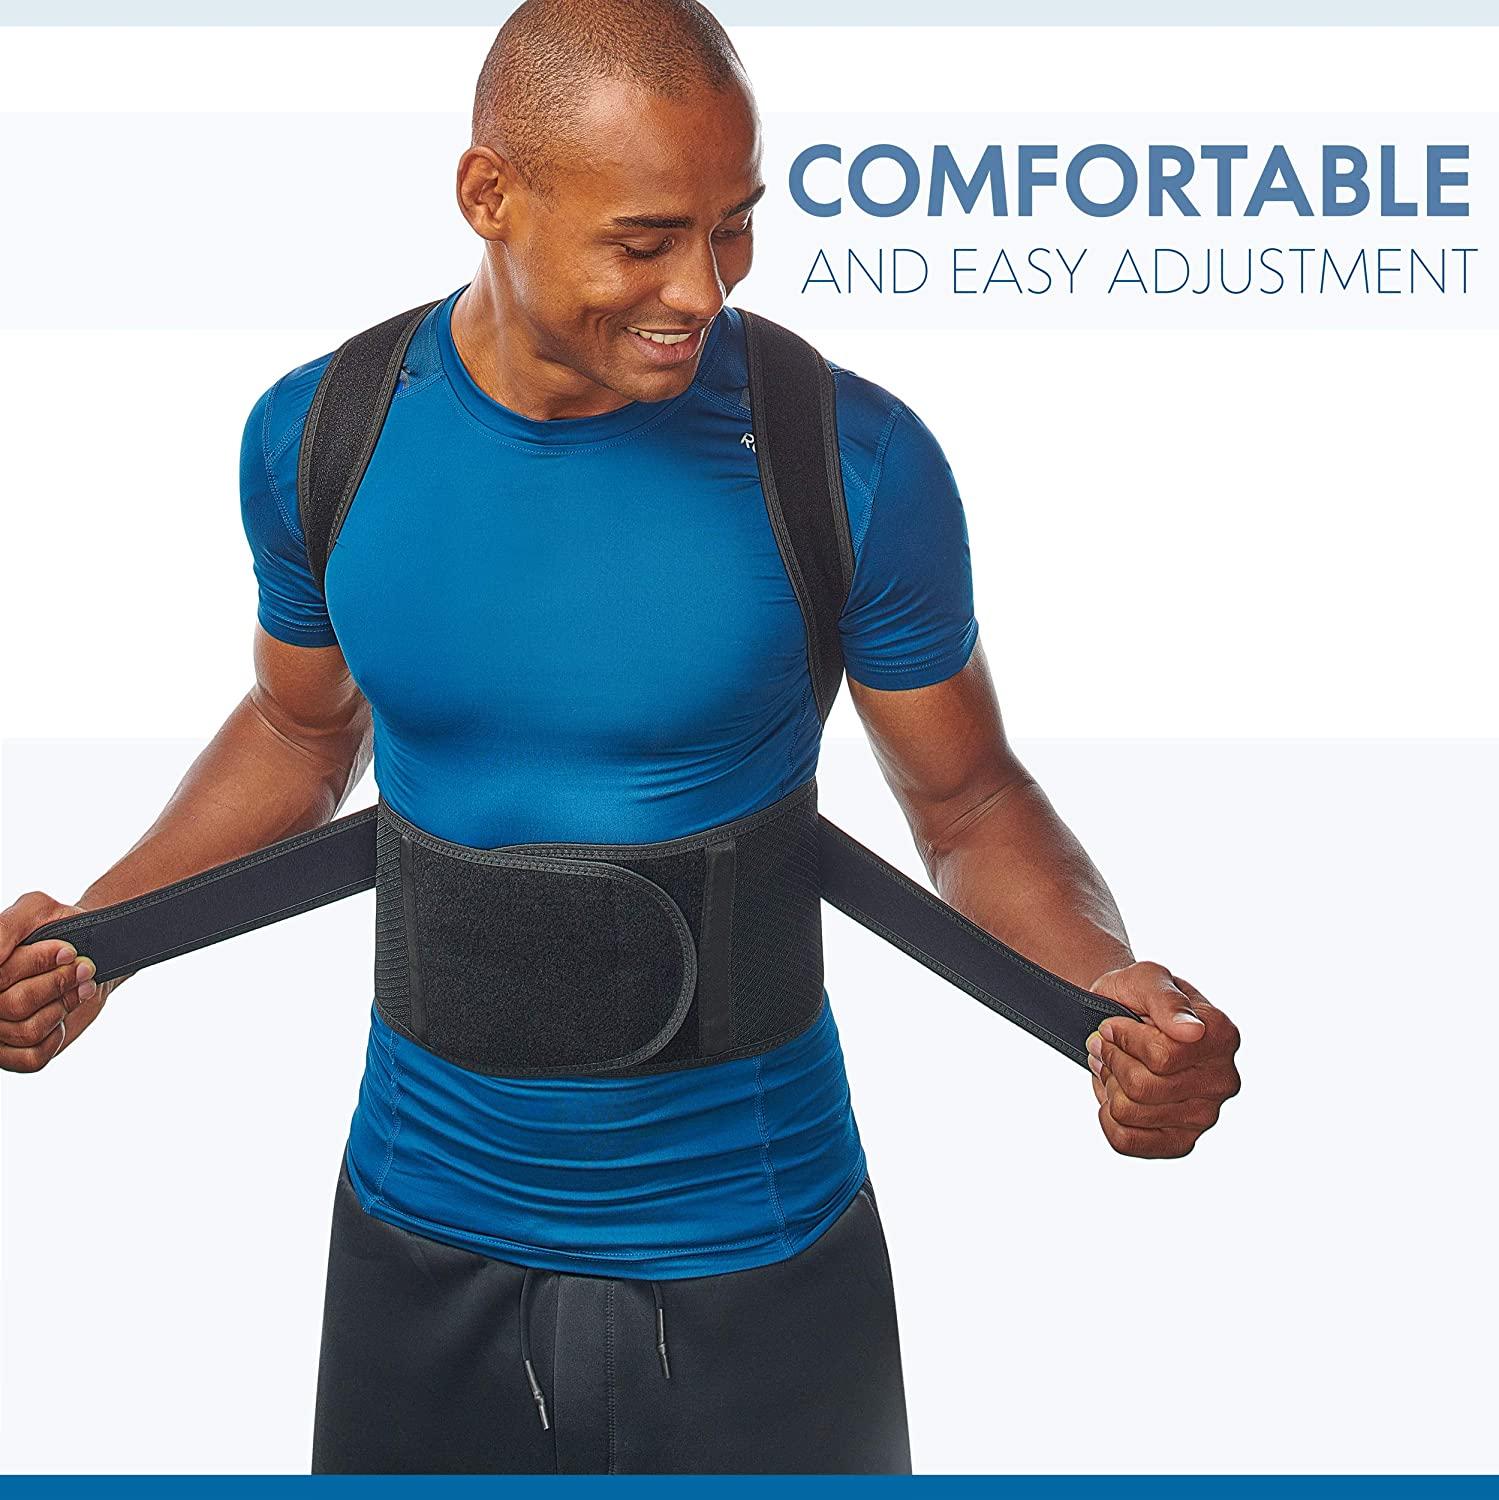 Comfy Brace Posture Corrector-Back Brace for Men and Women Adjustable  Straps